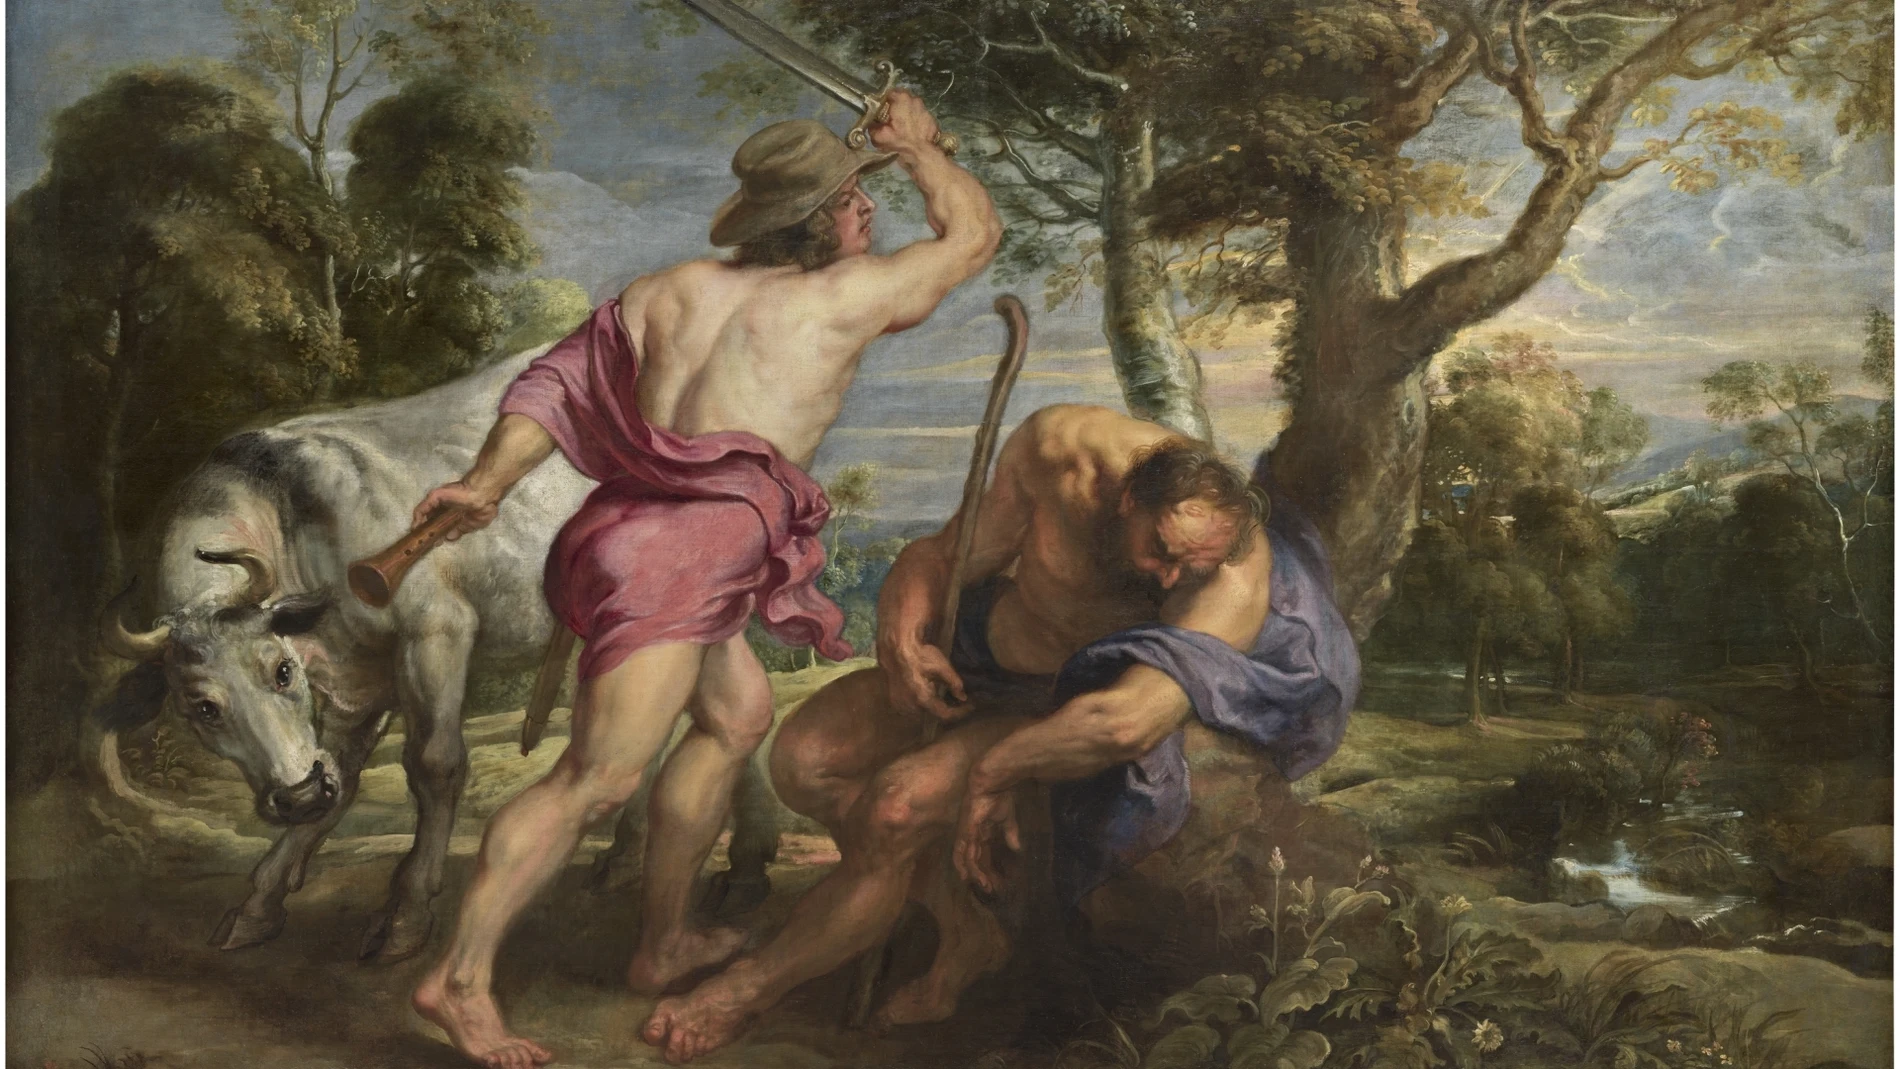 "Mercurio y Argos", obra integrante de la exposición “El taller de Rubens”